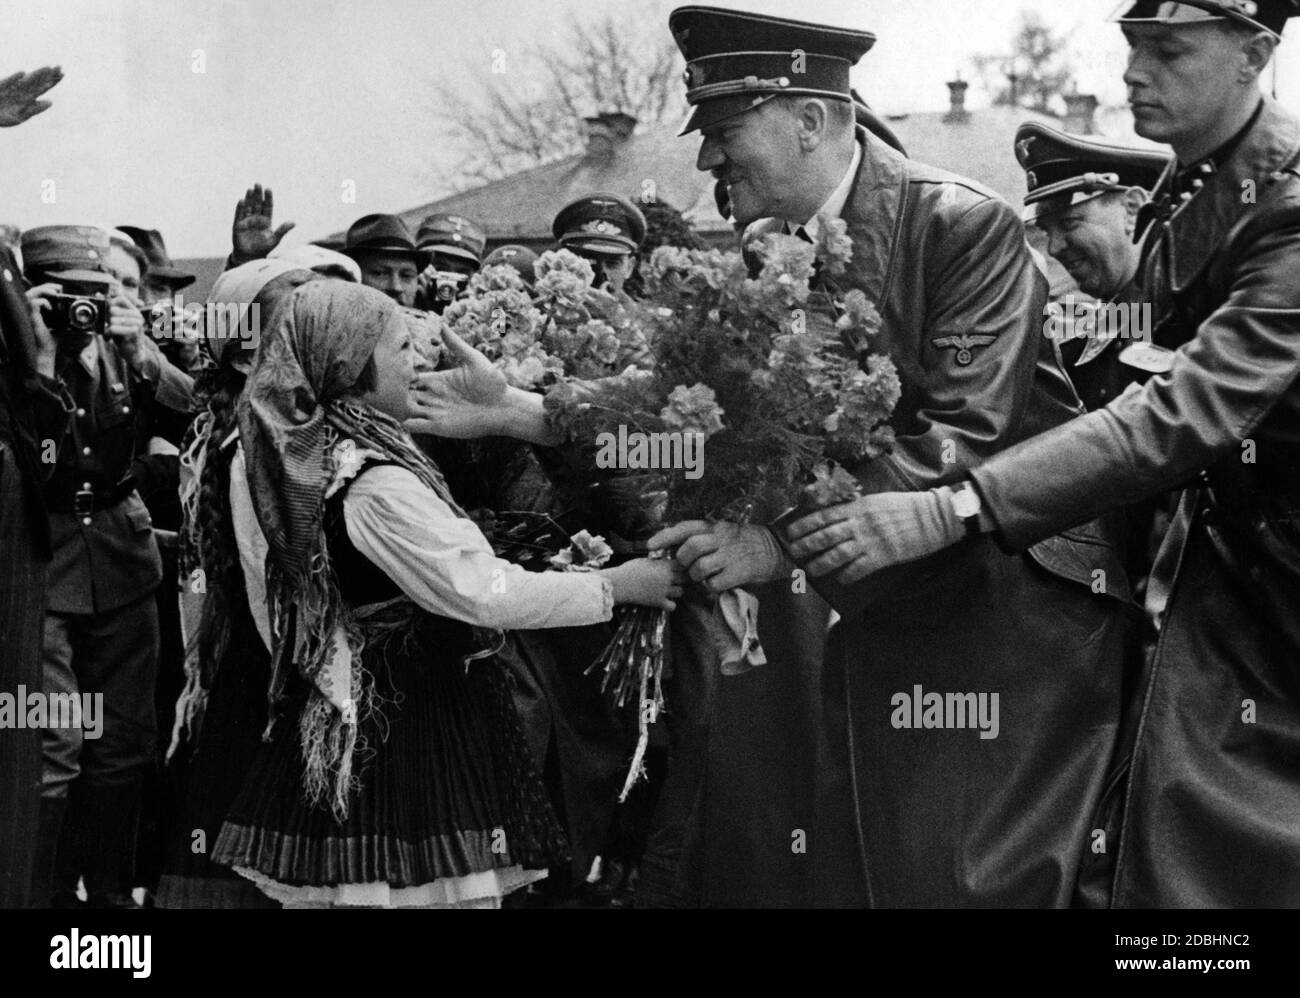 Adolf Hitler klopft einem kleinen Mädchen in die Wange, das ihm einen Blumenstrauß überreicht. Hinter Hitler Julius Schaub. Maribor - deutsch-österreichisches Marburg an der Drau - war bis 1918 eine im Wesentlichen deutschsprachige Stadt in Österreich-Ungarn. Stockfoto